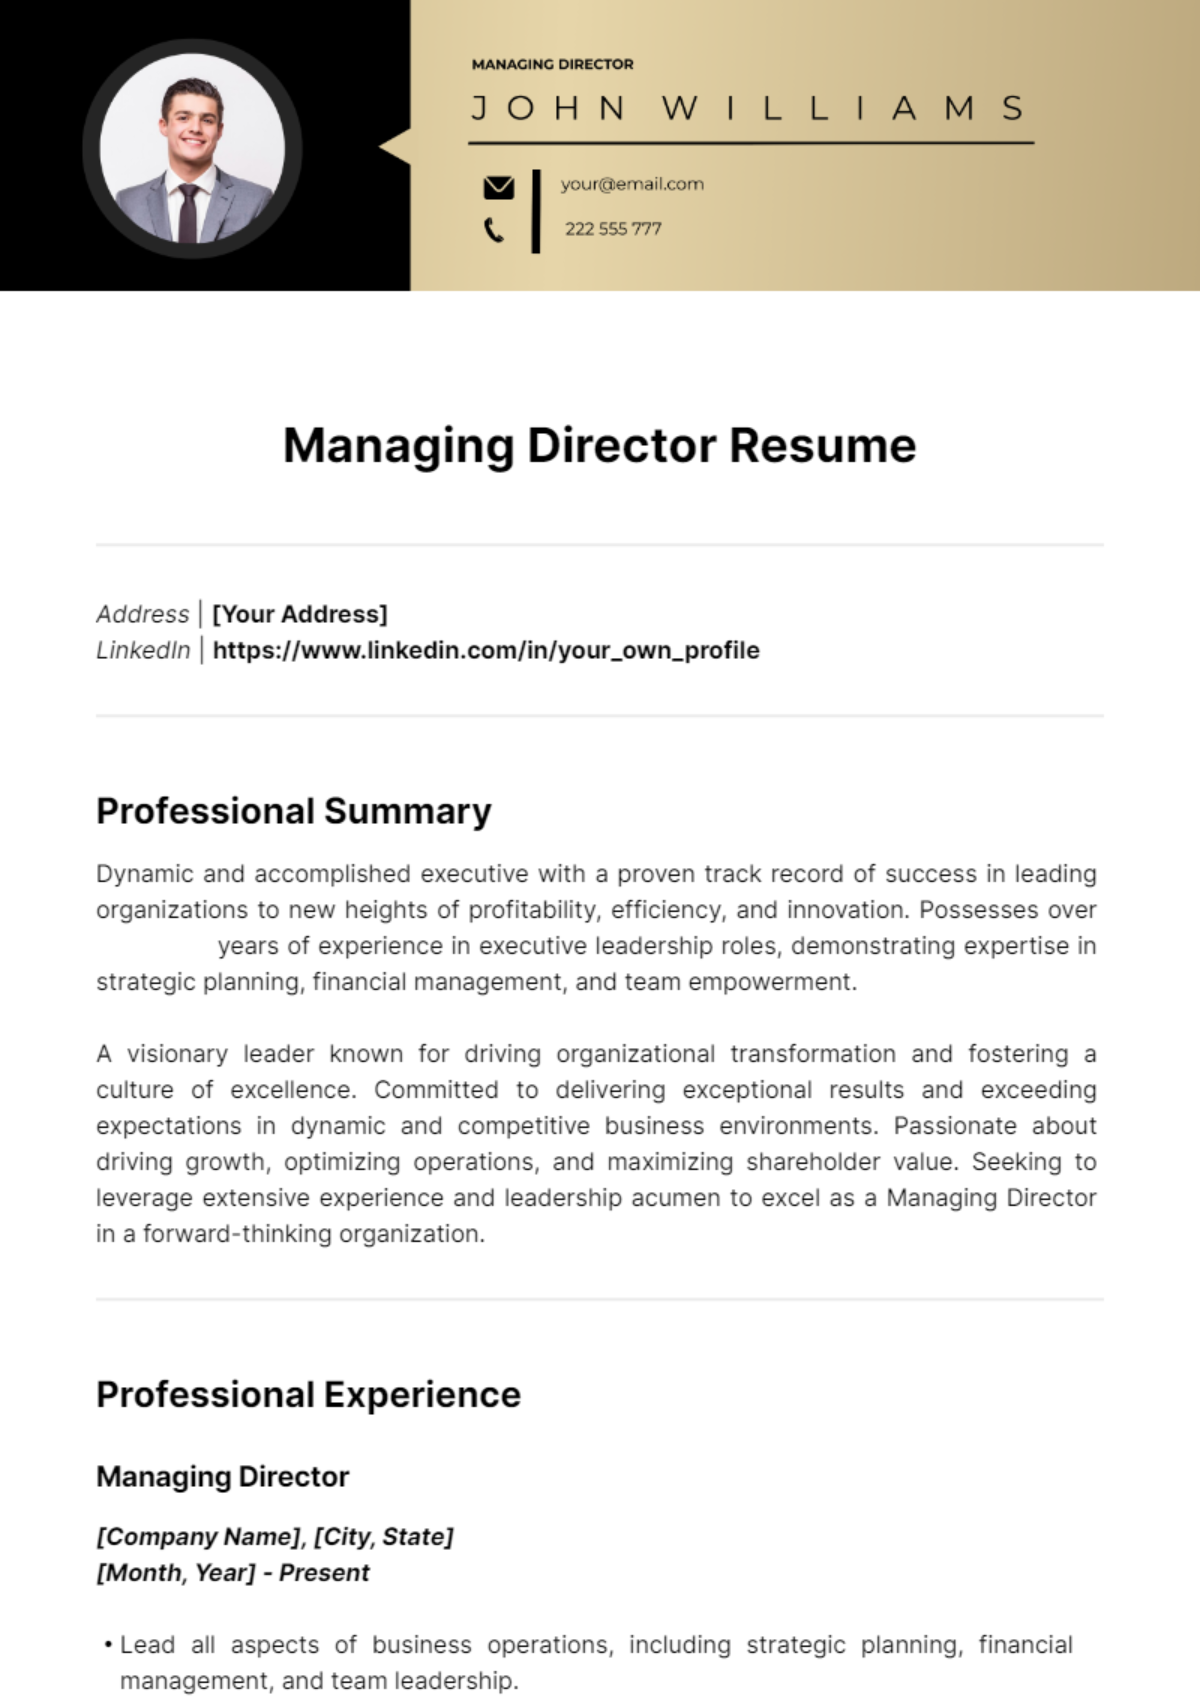 Managing Director Resume Template